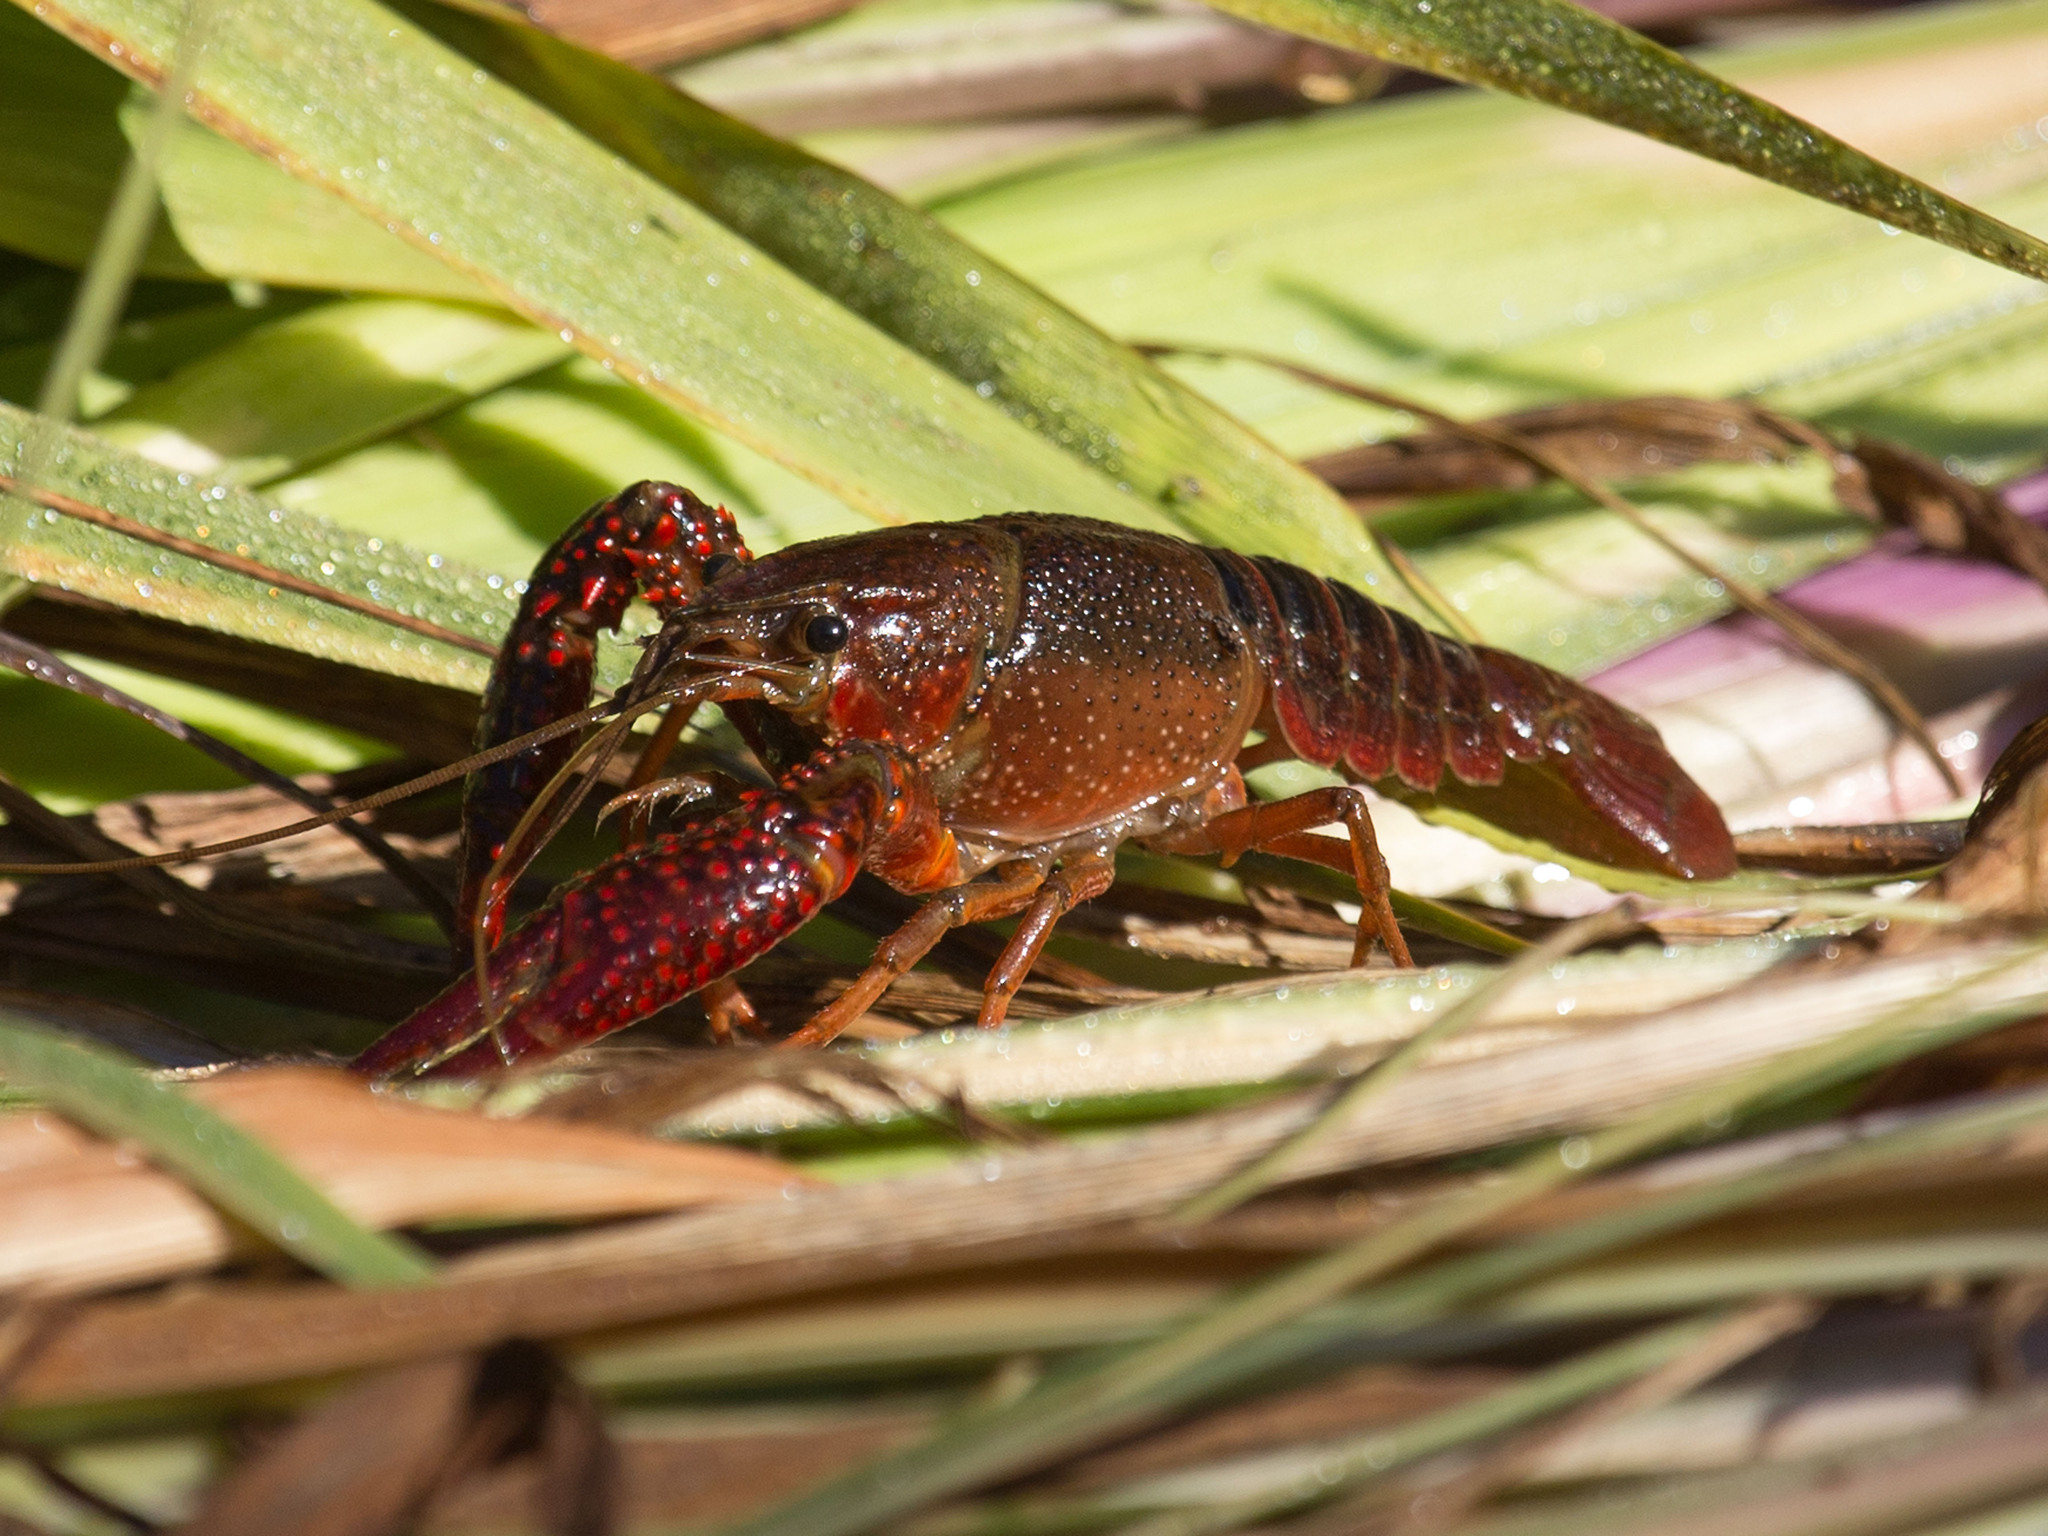 Image of Red swamp crawfish